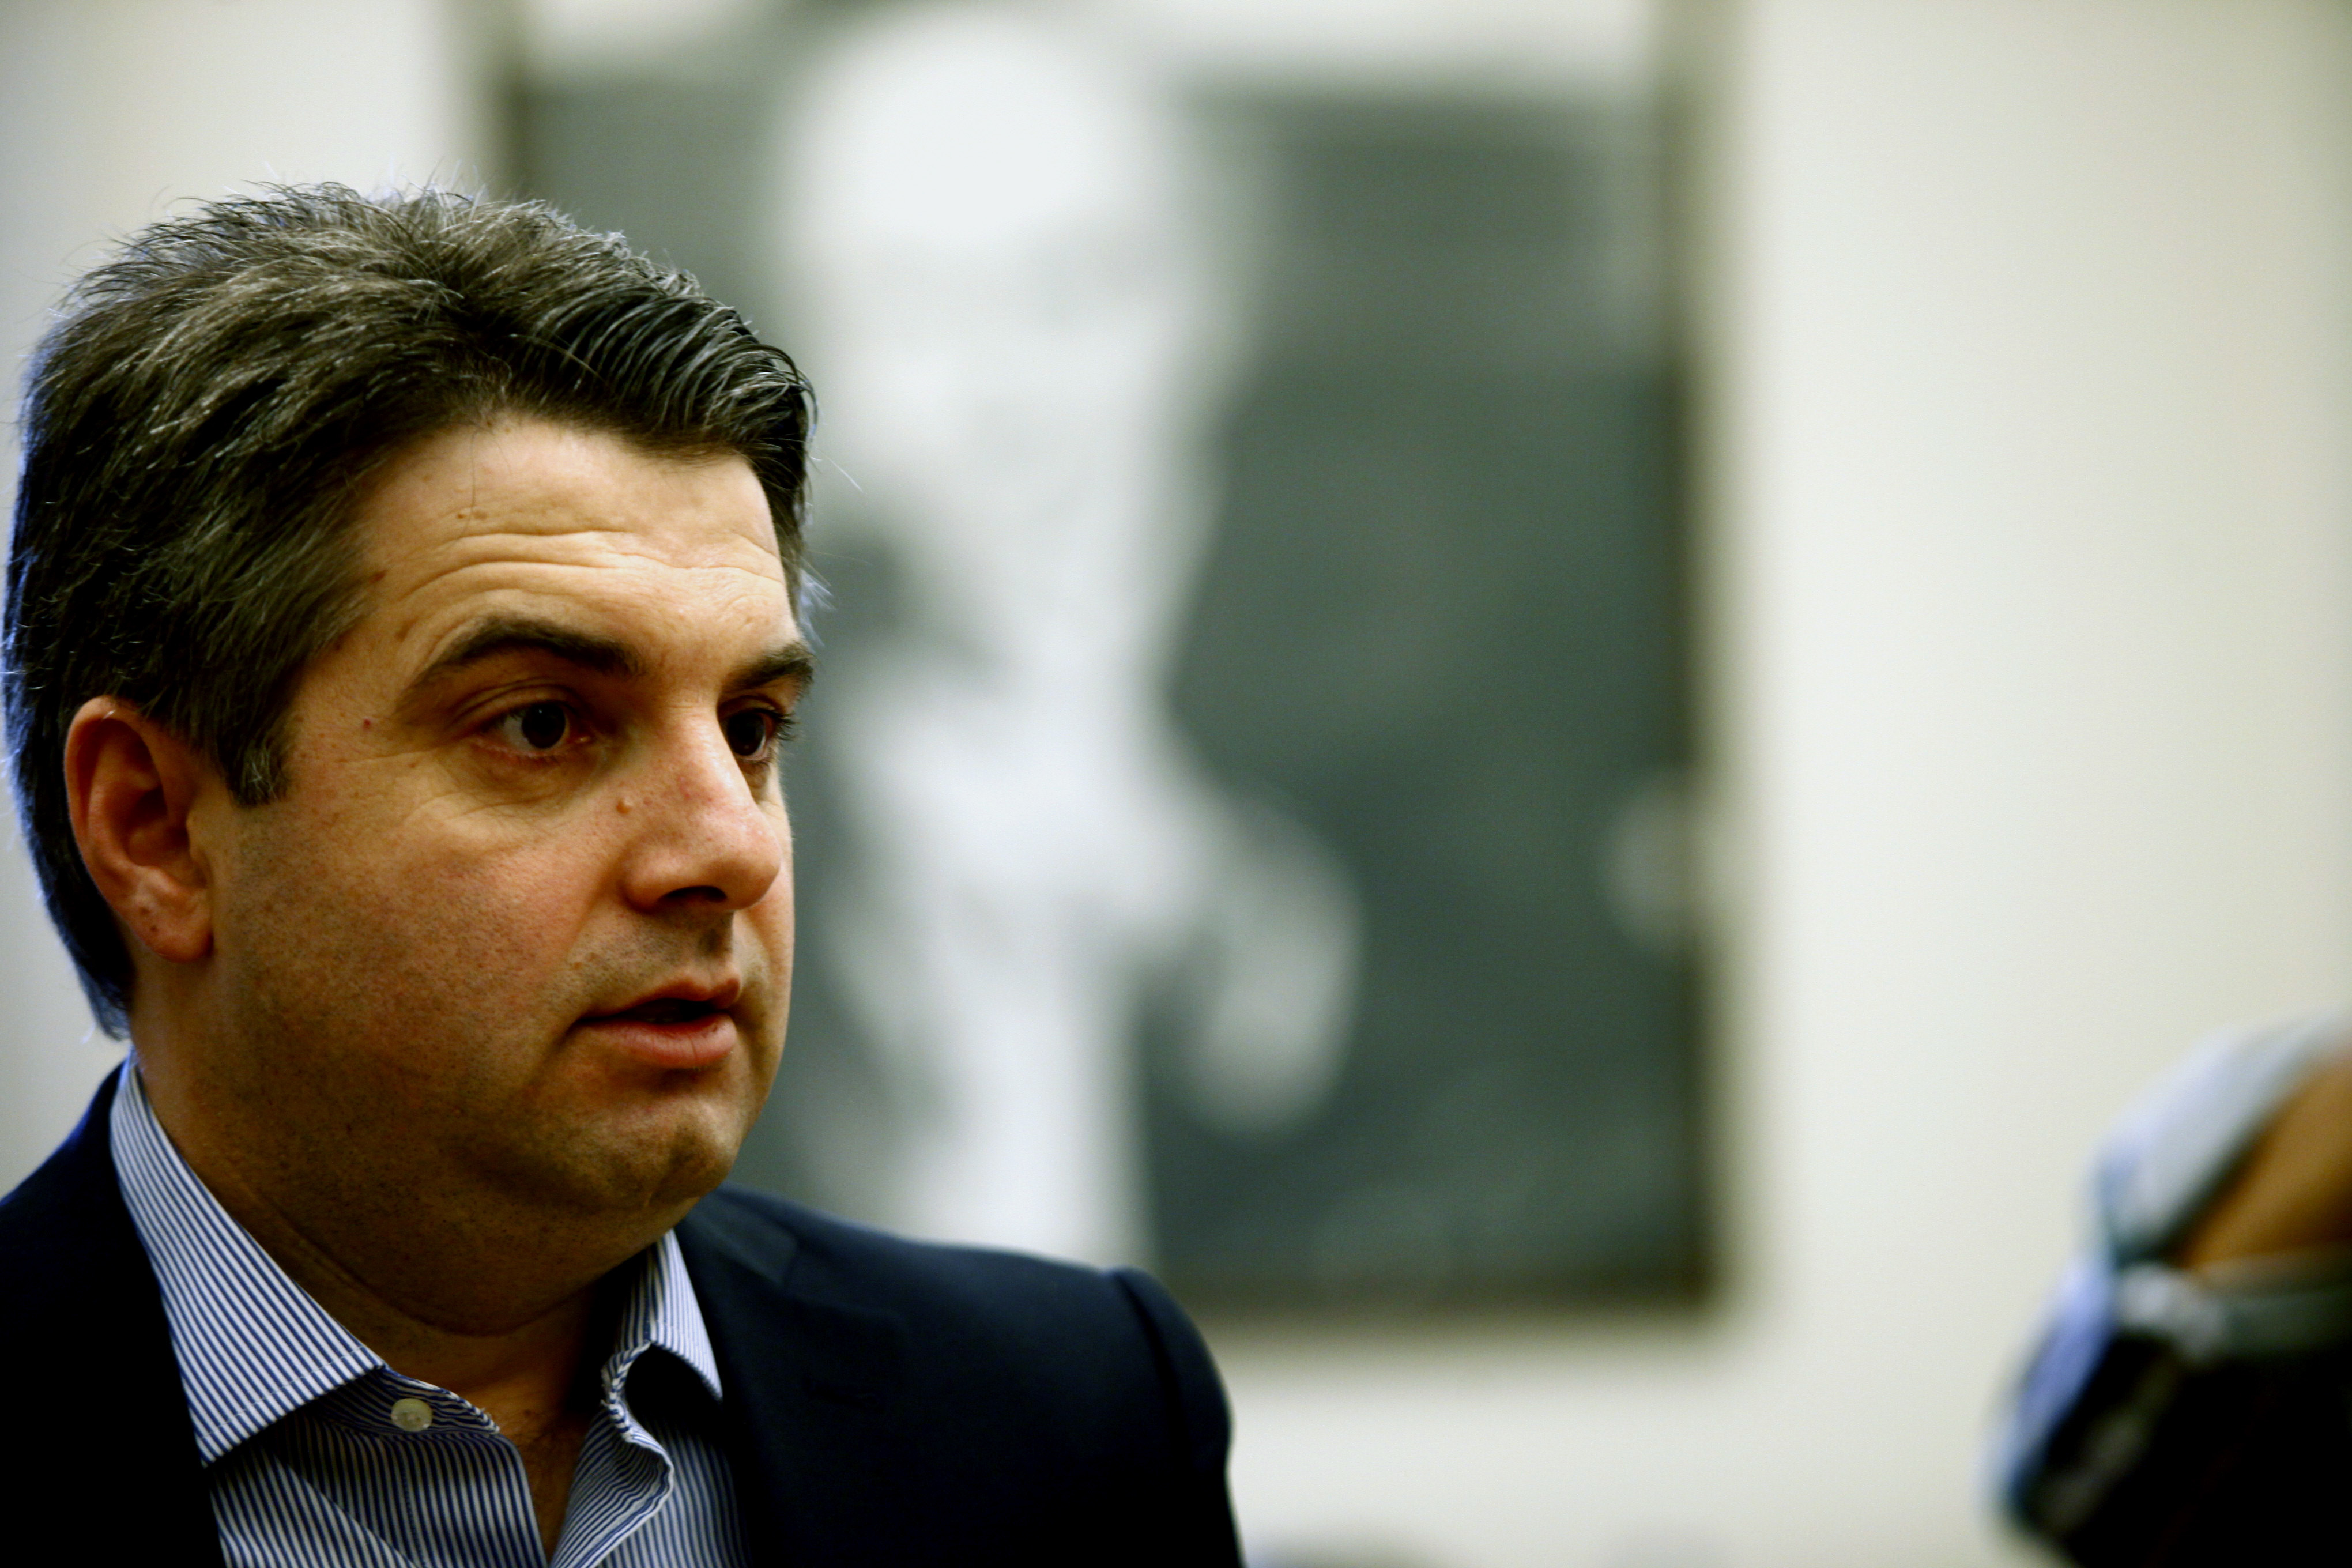 Οδ. Κωνσταντινόπουλος: Στελέχη του ΠΑΣΟΚ δίνουν δήθεν τη μάχη για “ιερά και όσια”